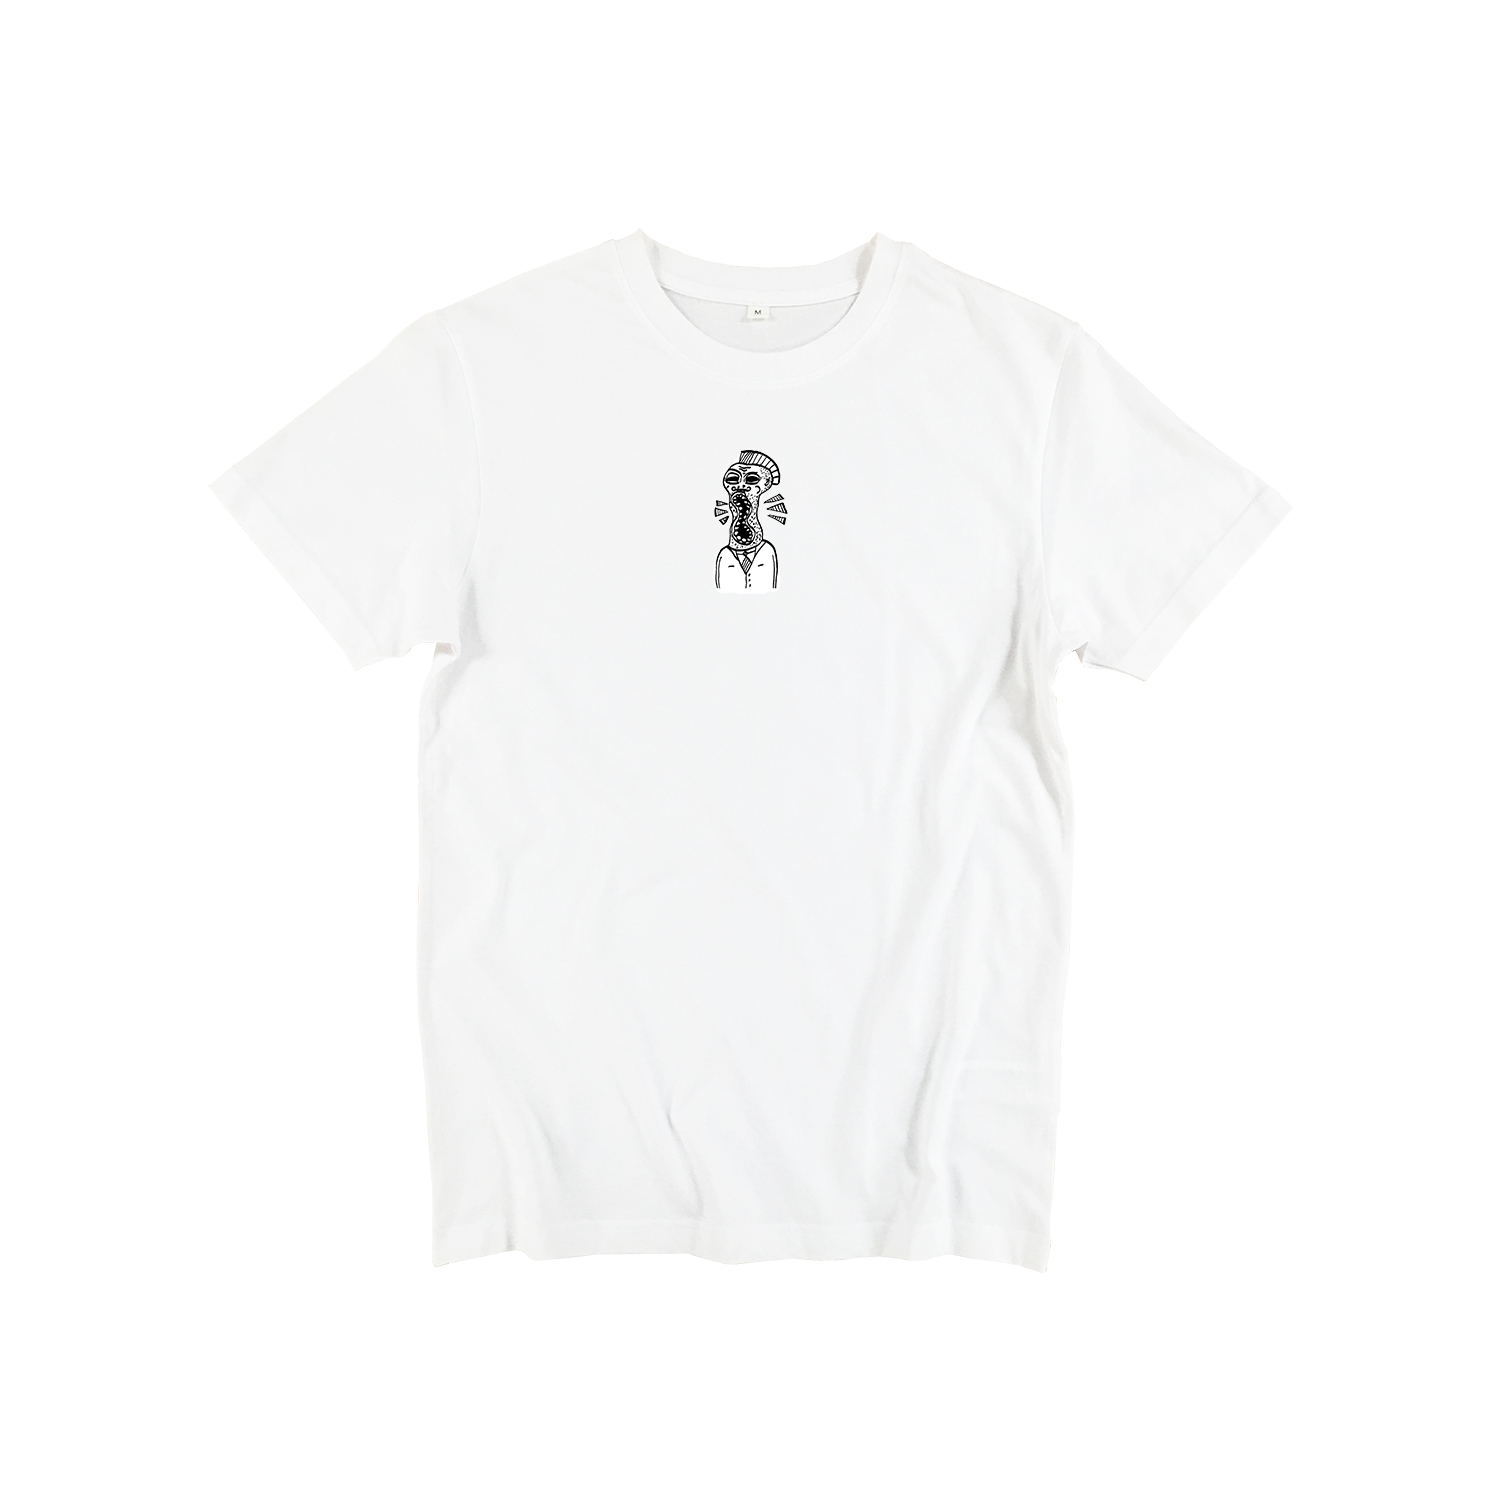 T-shirt - wit - voor - YOURLOOKSDONOTDEFINEME by Wesly van de Rijdt wit - ONE AND ONE MAKES TWO kopiëren